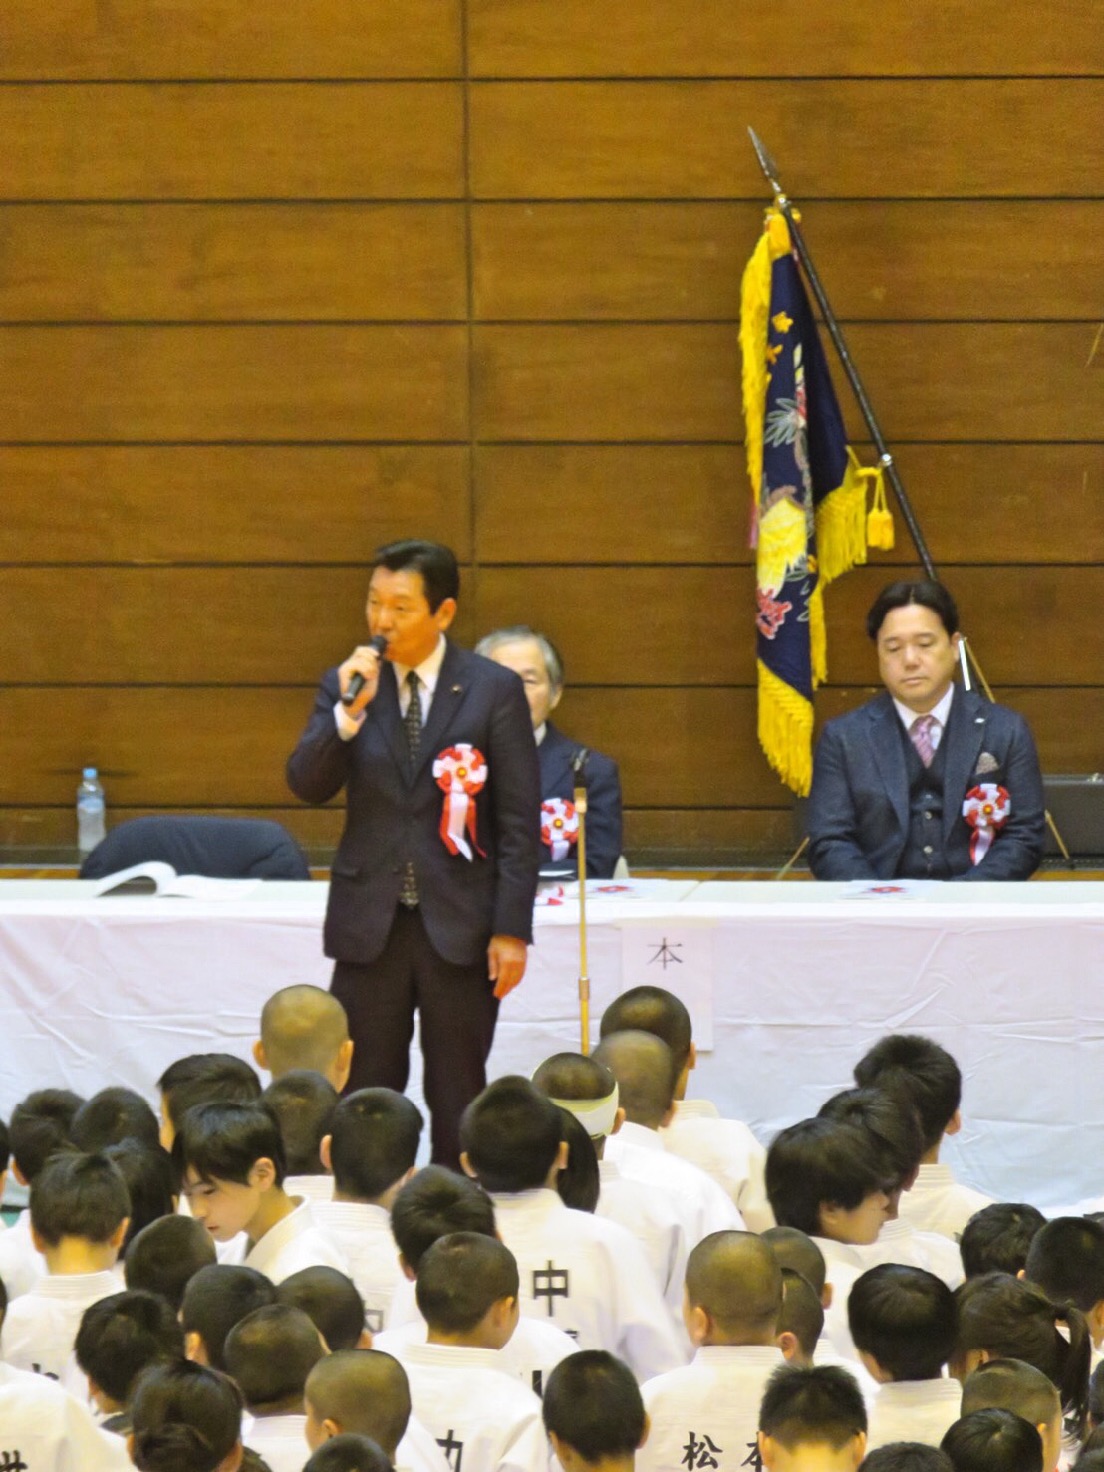 2020年2月22日(土) 芳野旗争奪柔道大会に出席